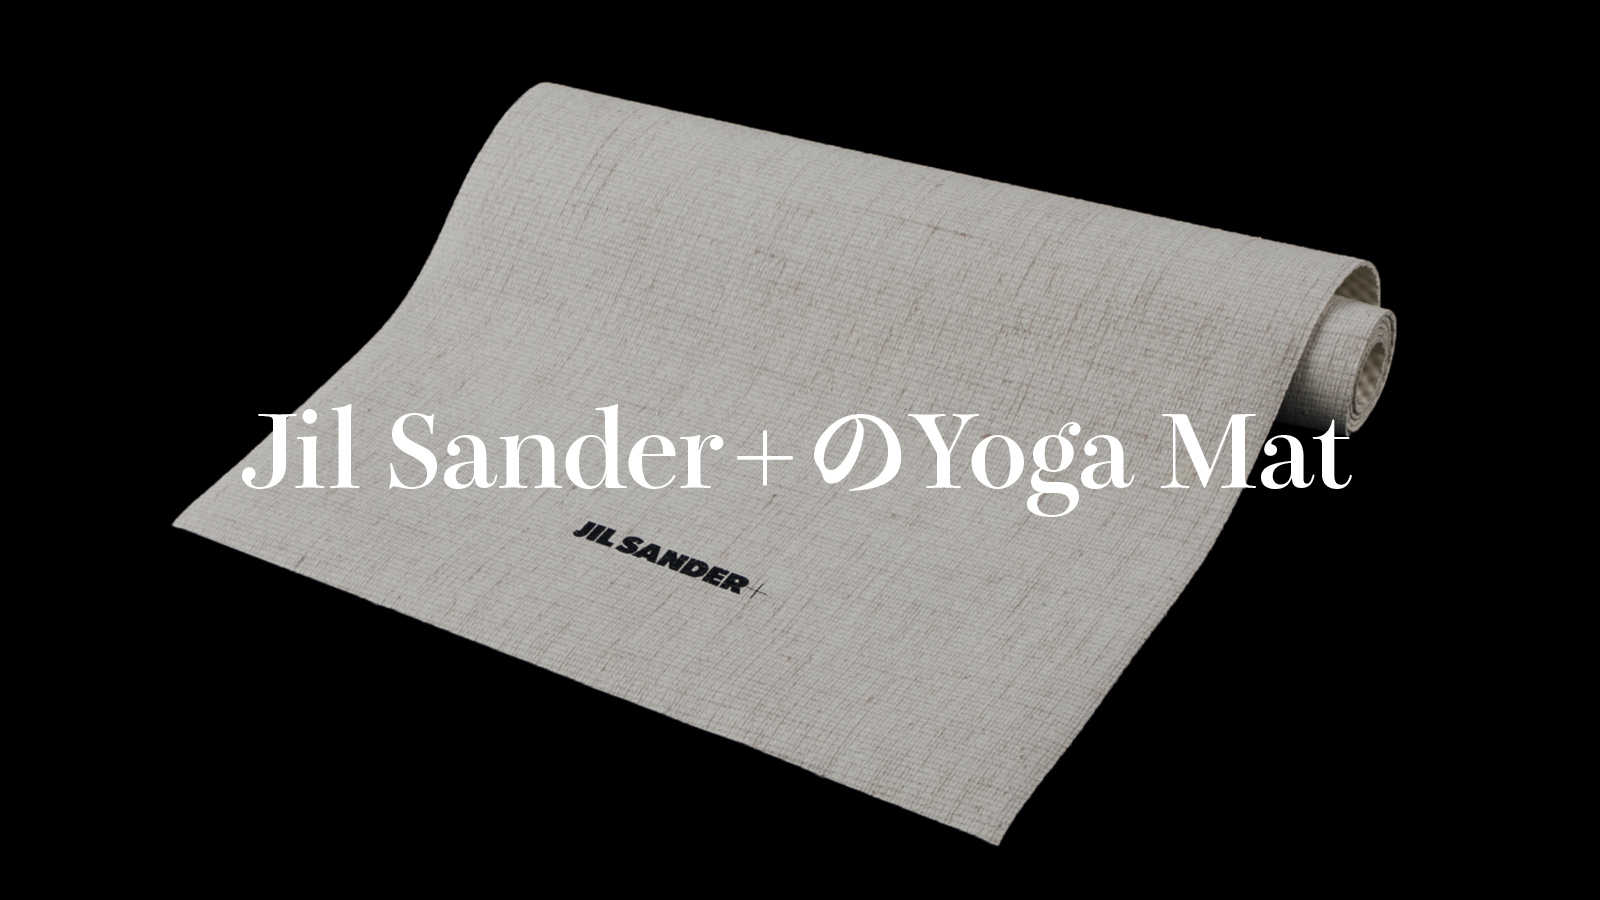 肌に触れたときの凹凸感も心地いい〈Jil Sander+〉の《Yoga Mat